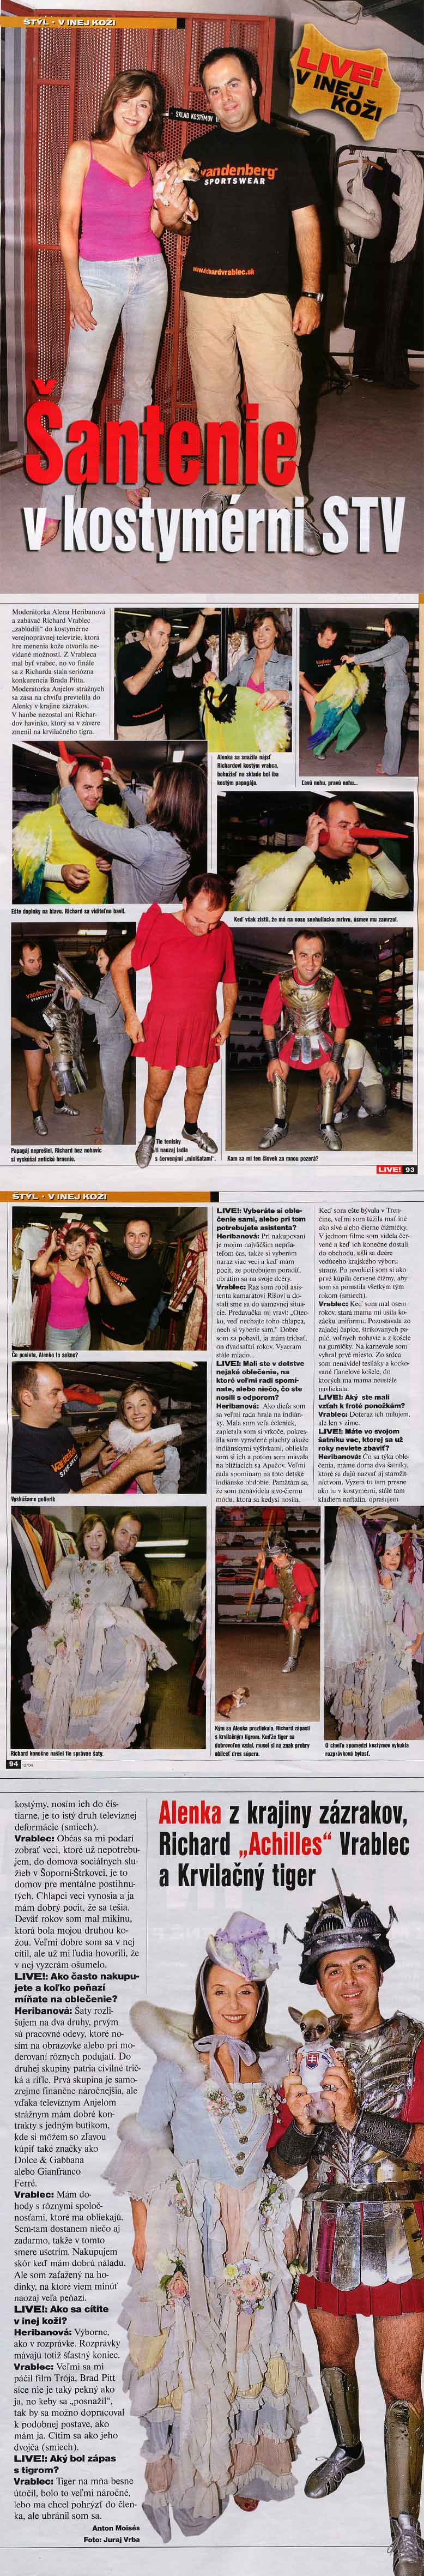 Magazín LIVE!, jún 2004: Šantenie v kostymérni STV